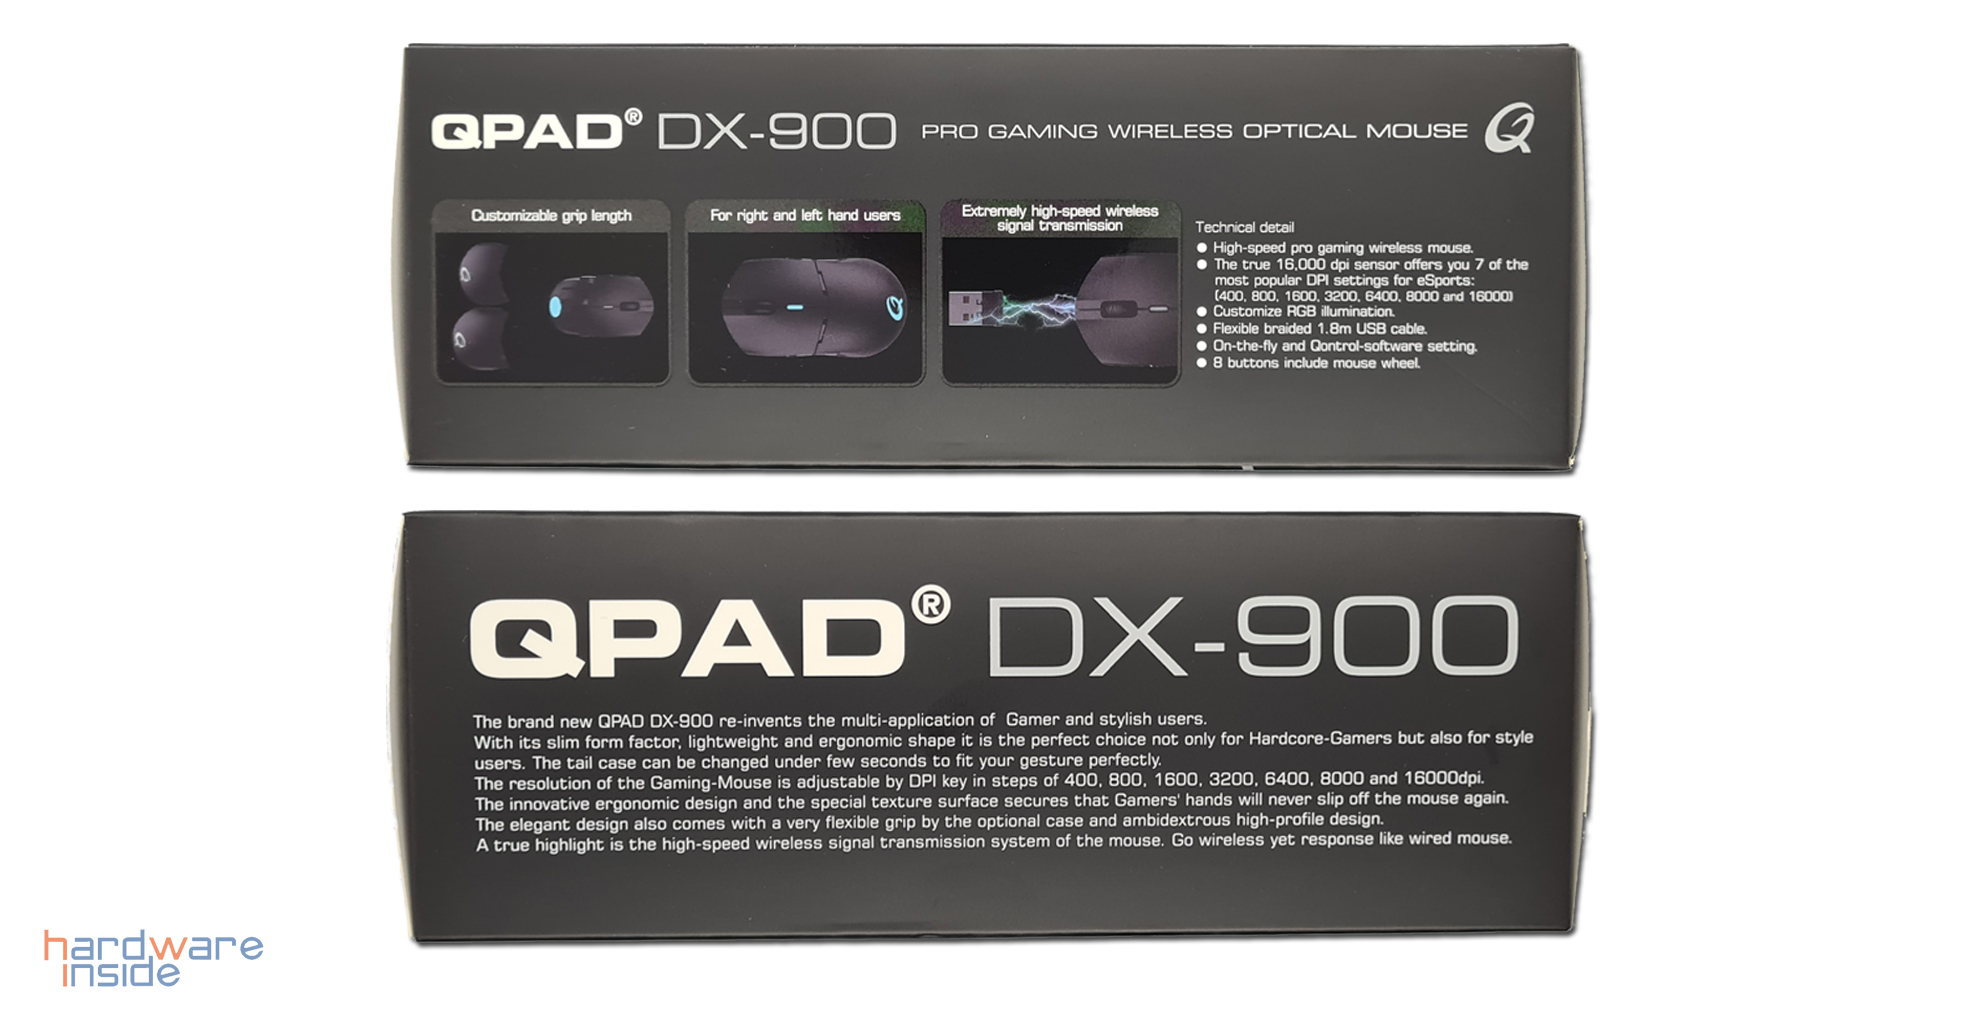 qpad dx900_3.jpg